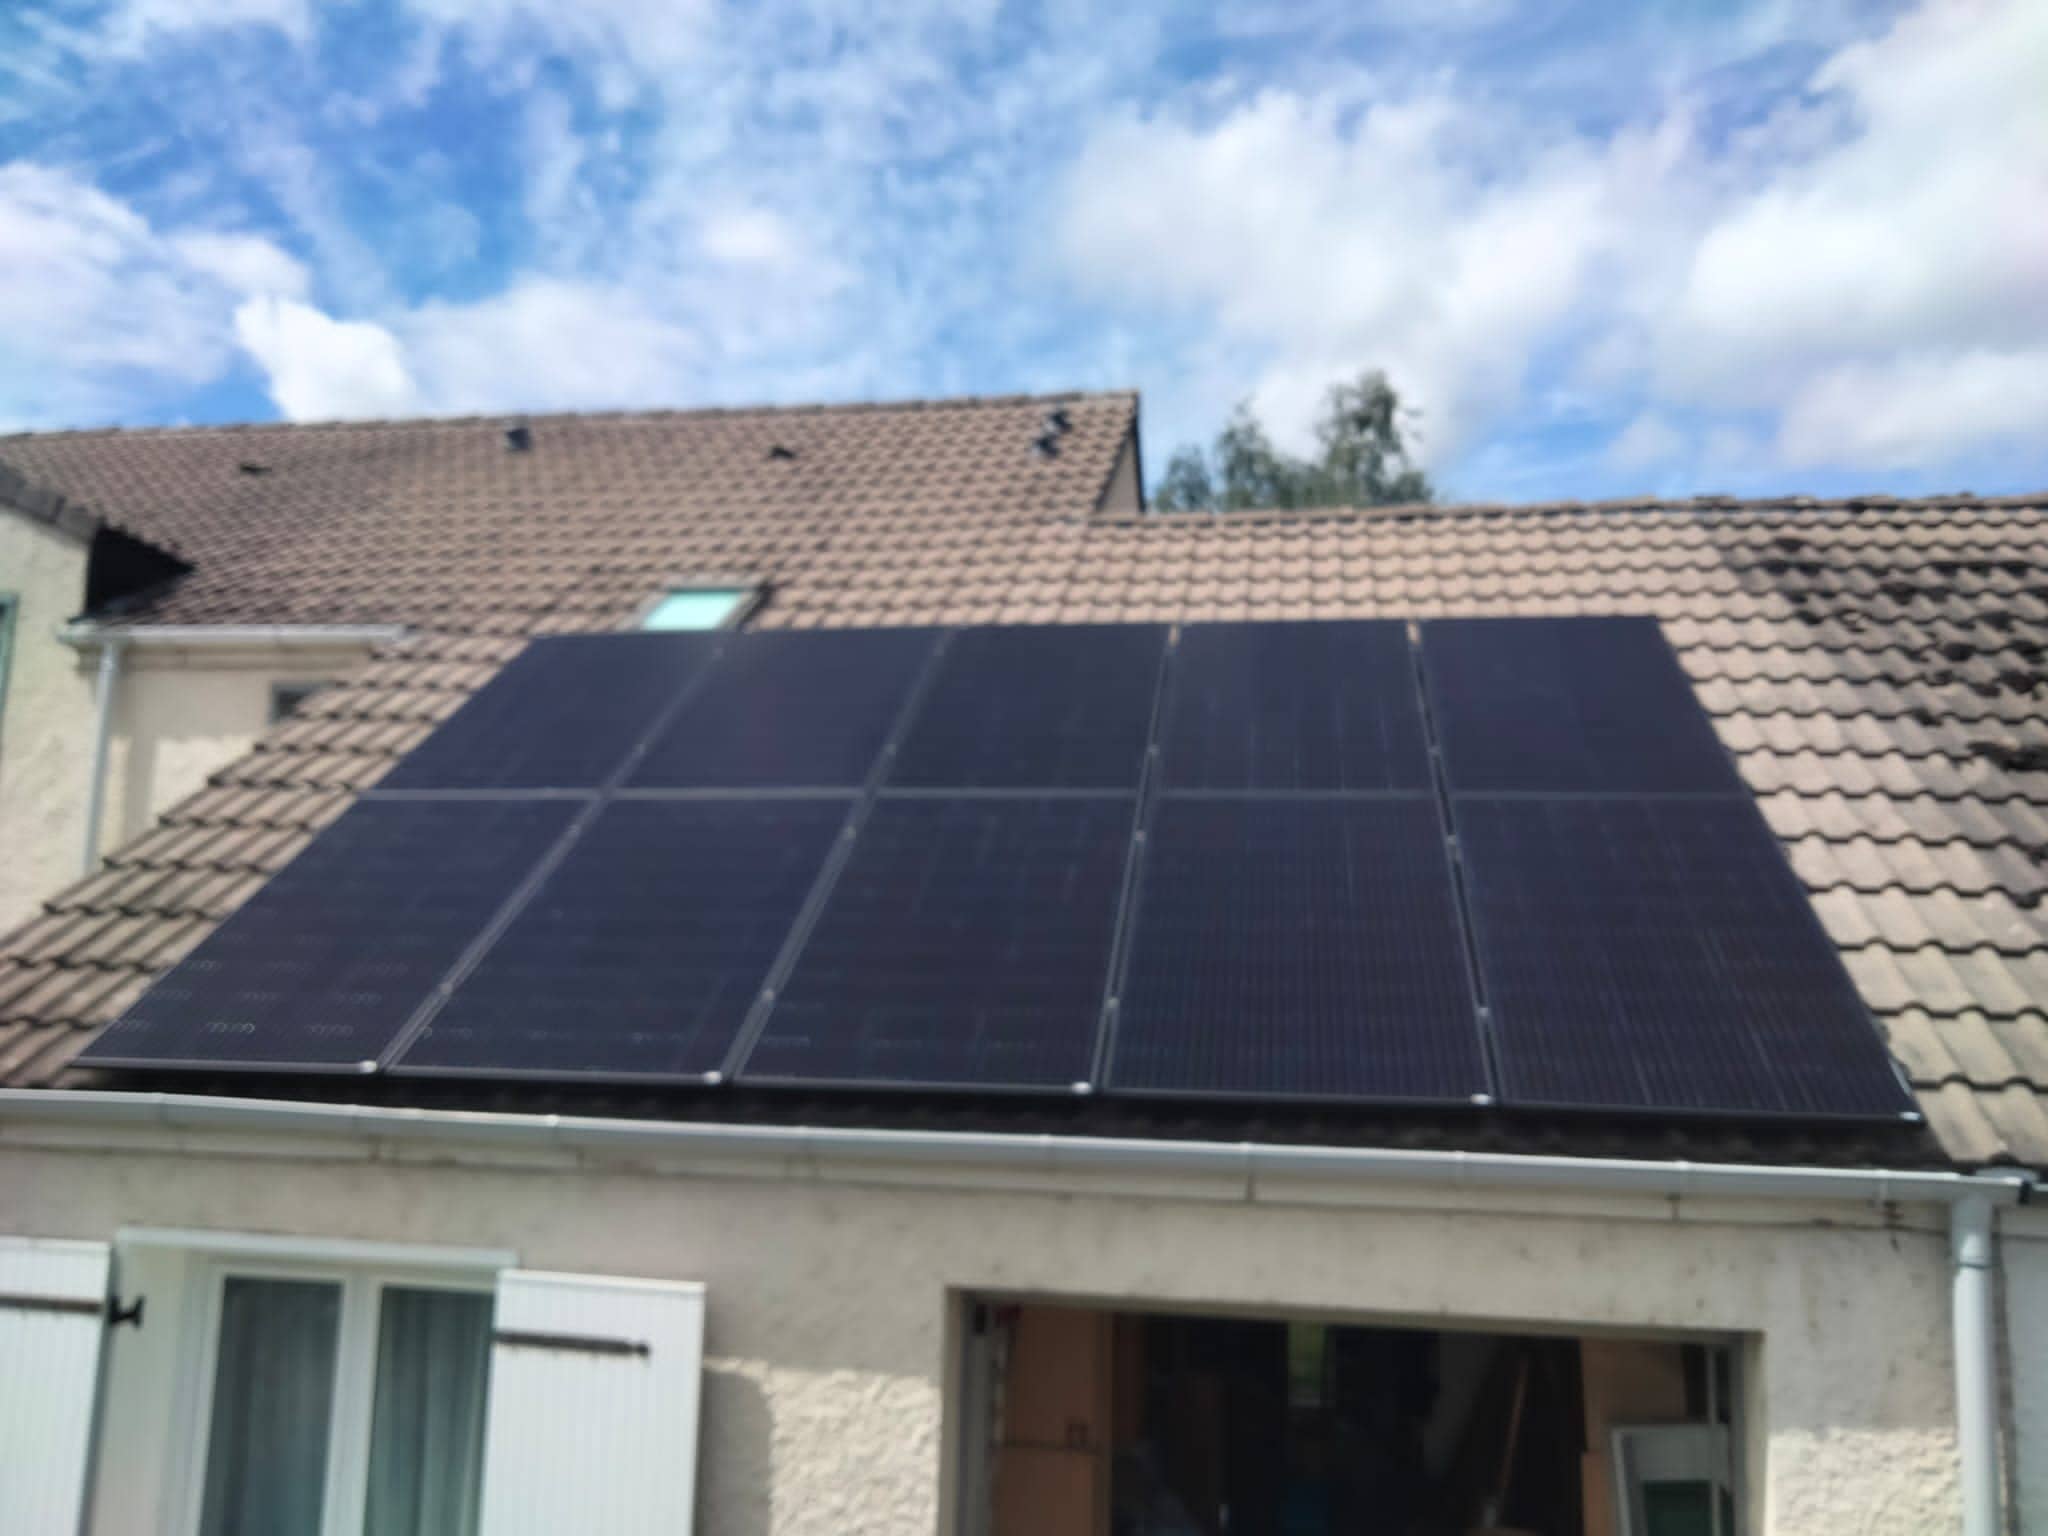 Panneaux solaires maison